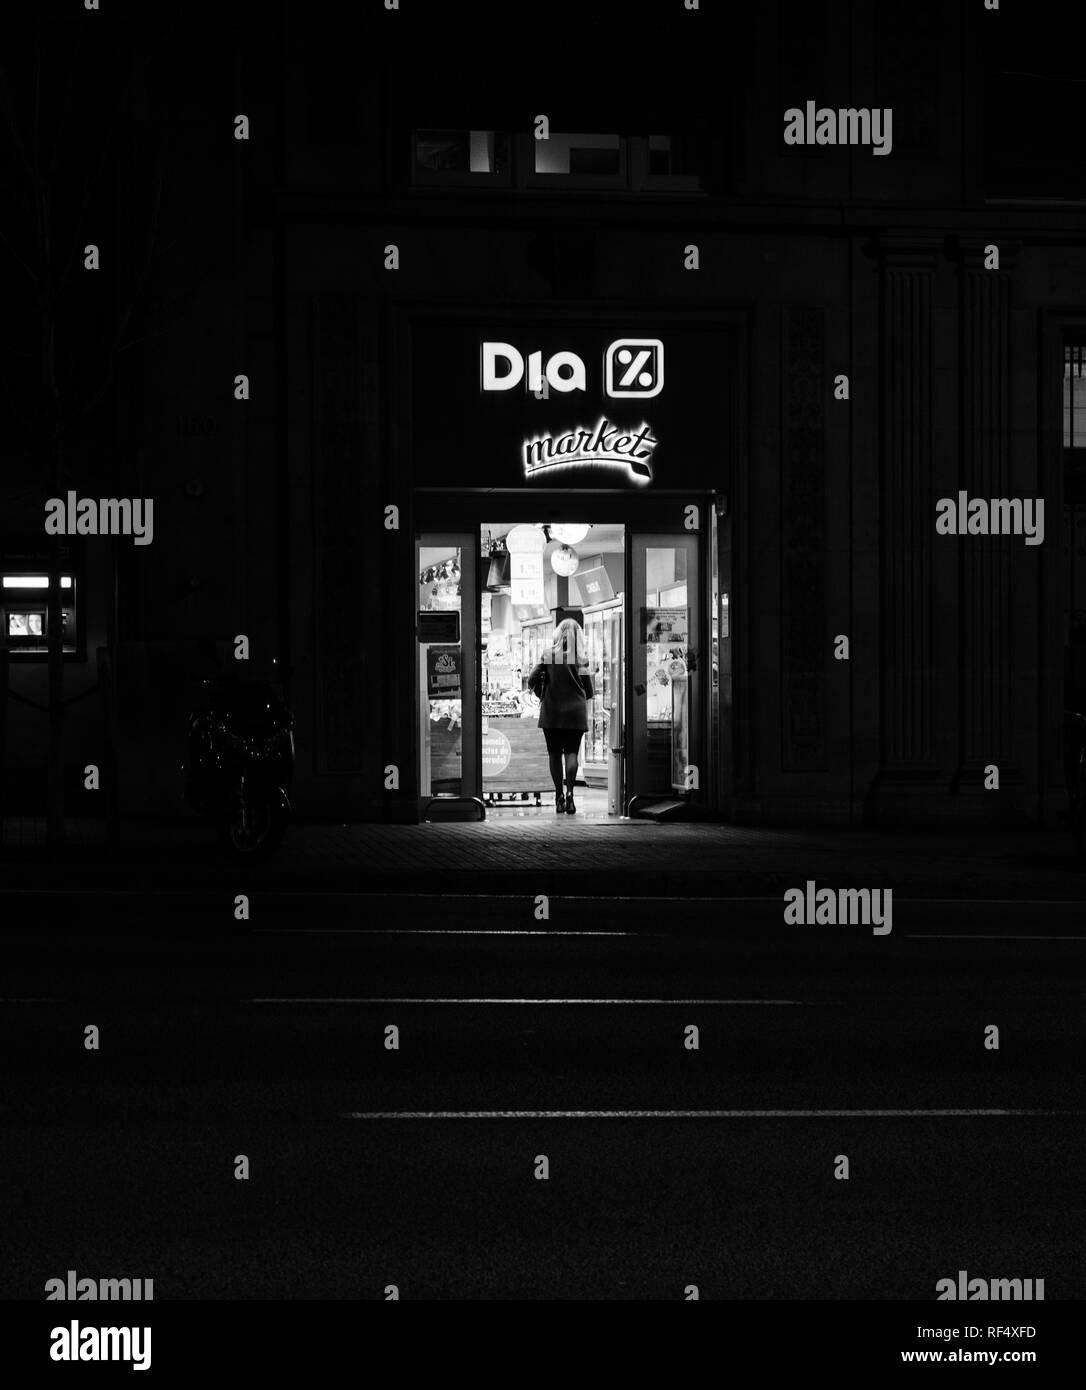 Barcelone, Espagne - NOV 11, 2017 : image en noir et blanc d'une femme entrant dans DIA Distribuidora Internacional de Alimentacion international espagnol supermarché hard-discount dans le centre de Barcelone Banque D'Images